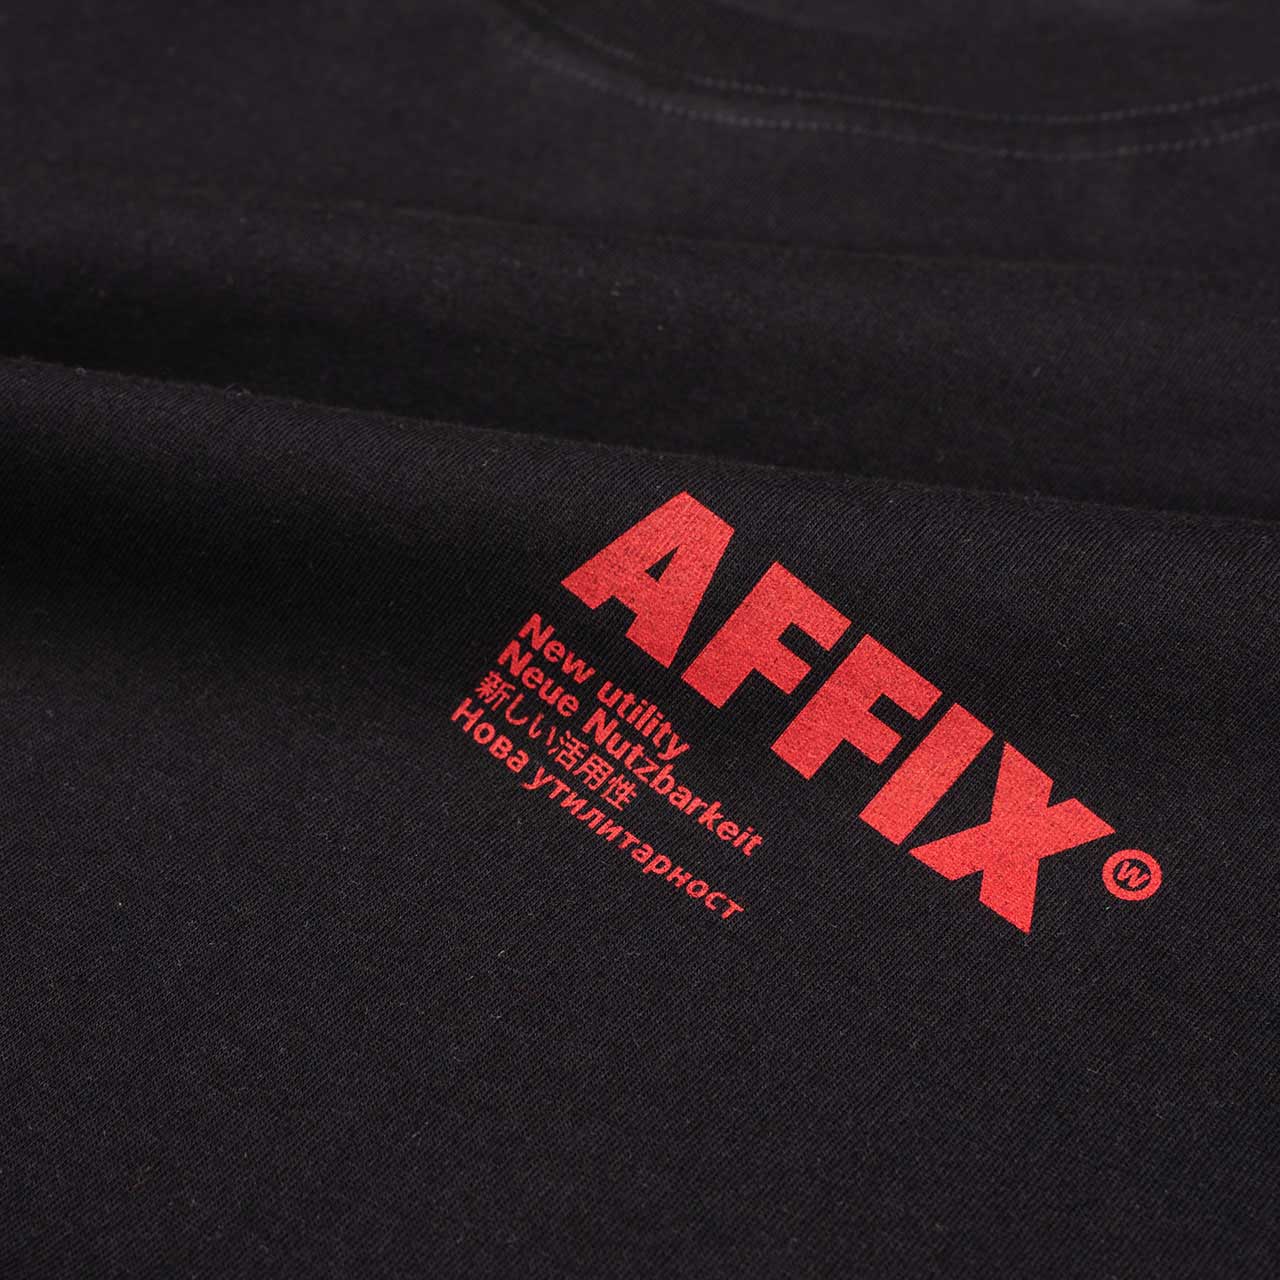 affix works affix standardised logo t-shirt (black)